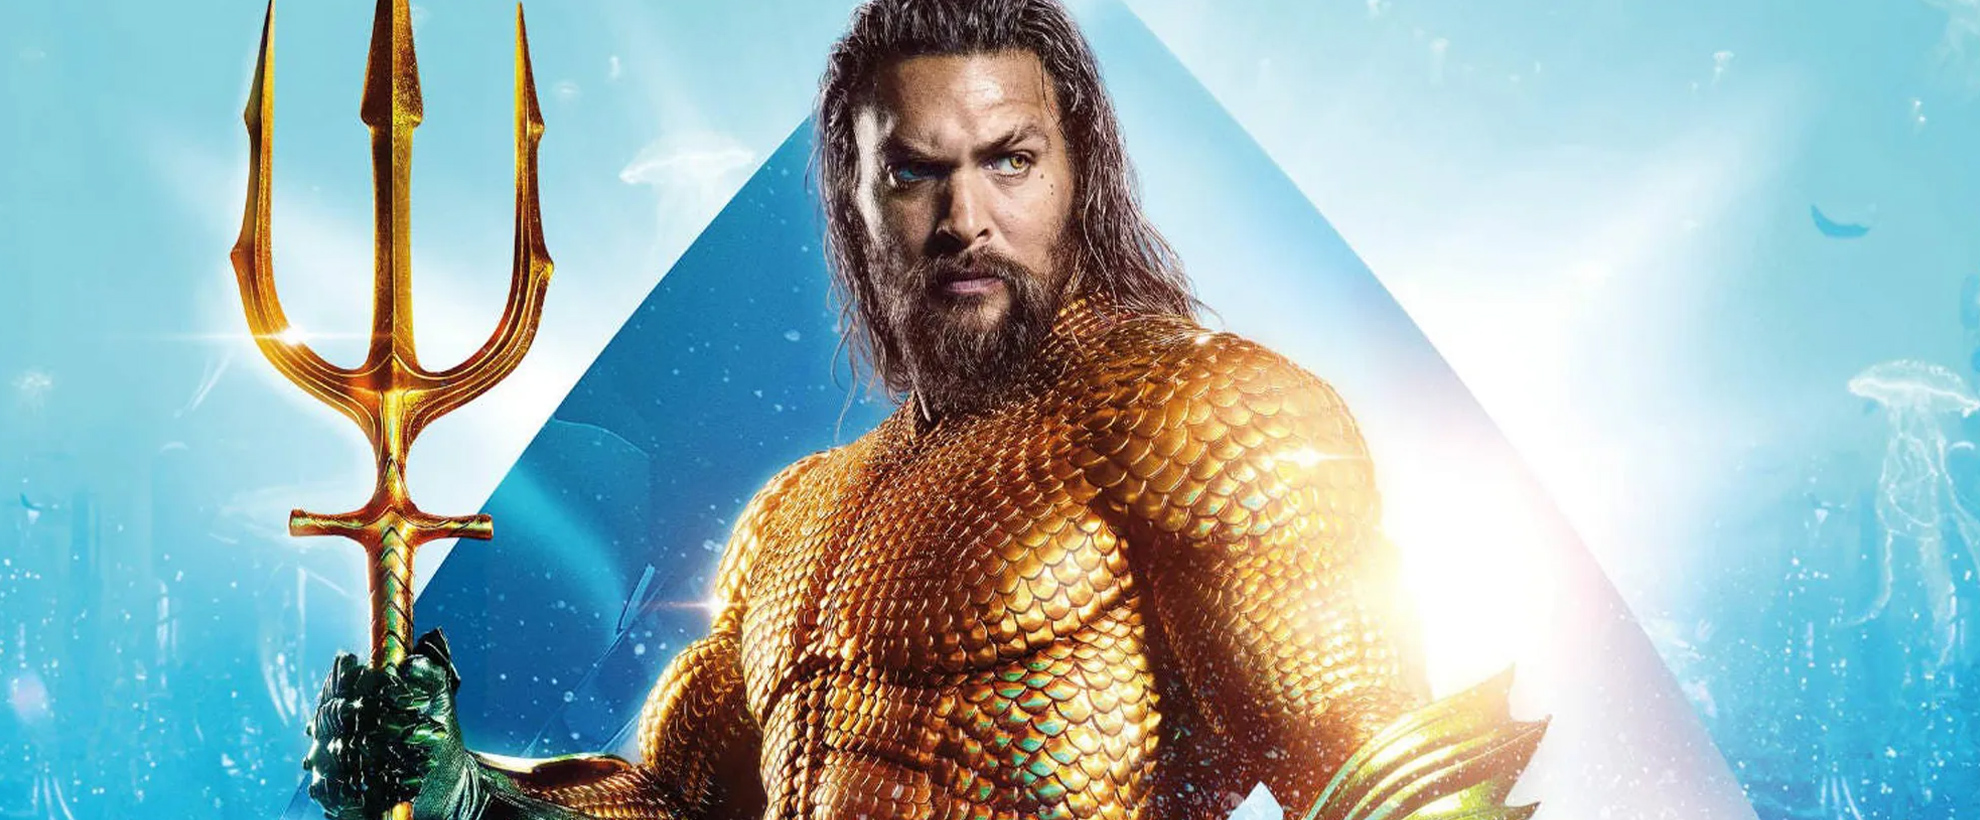 A promotional image of Jason Momoa as Aquaman